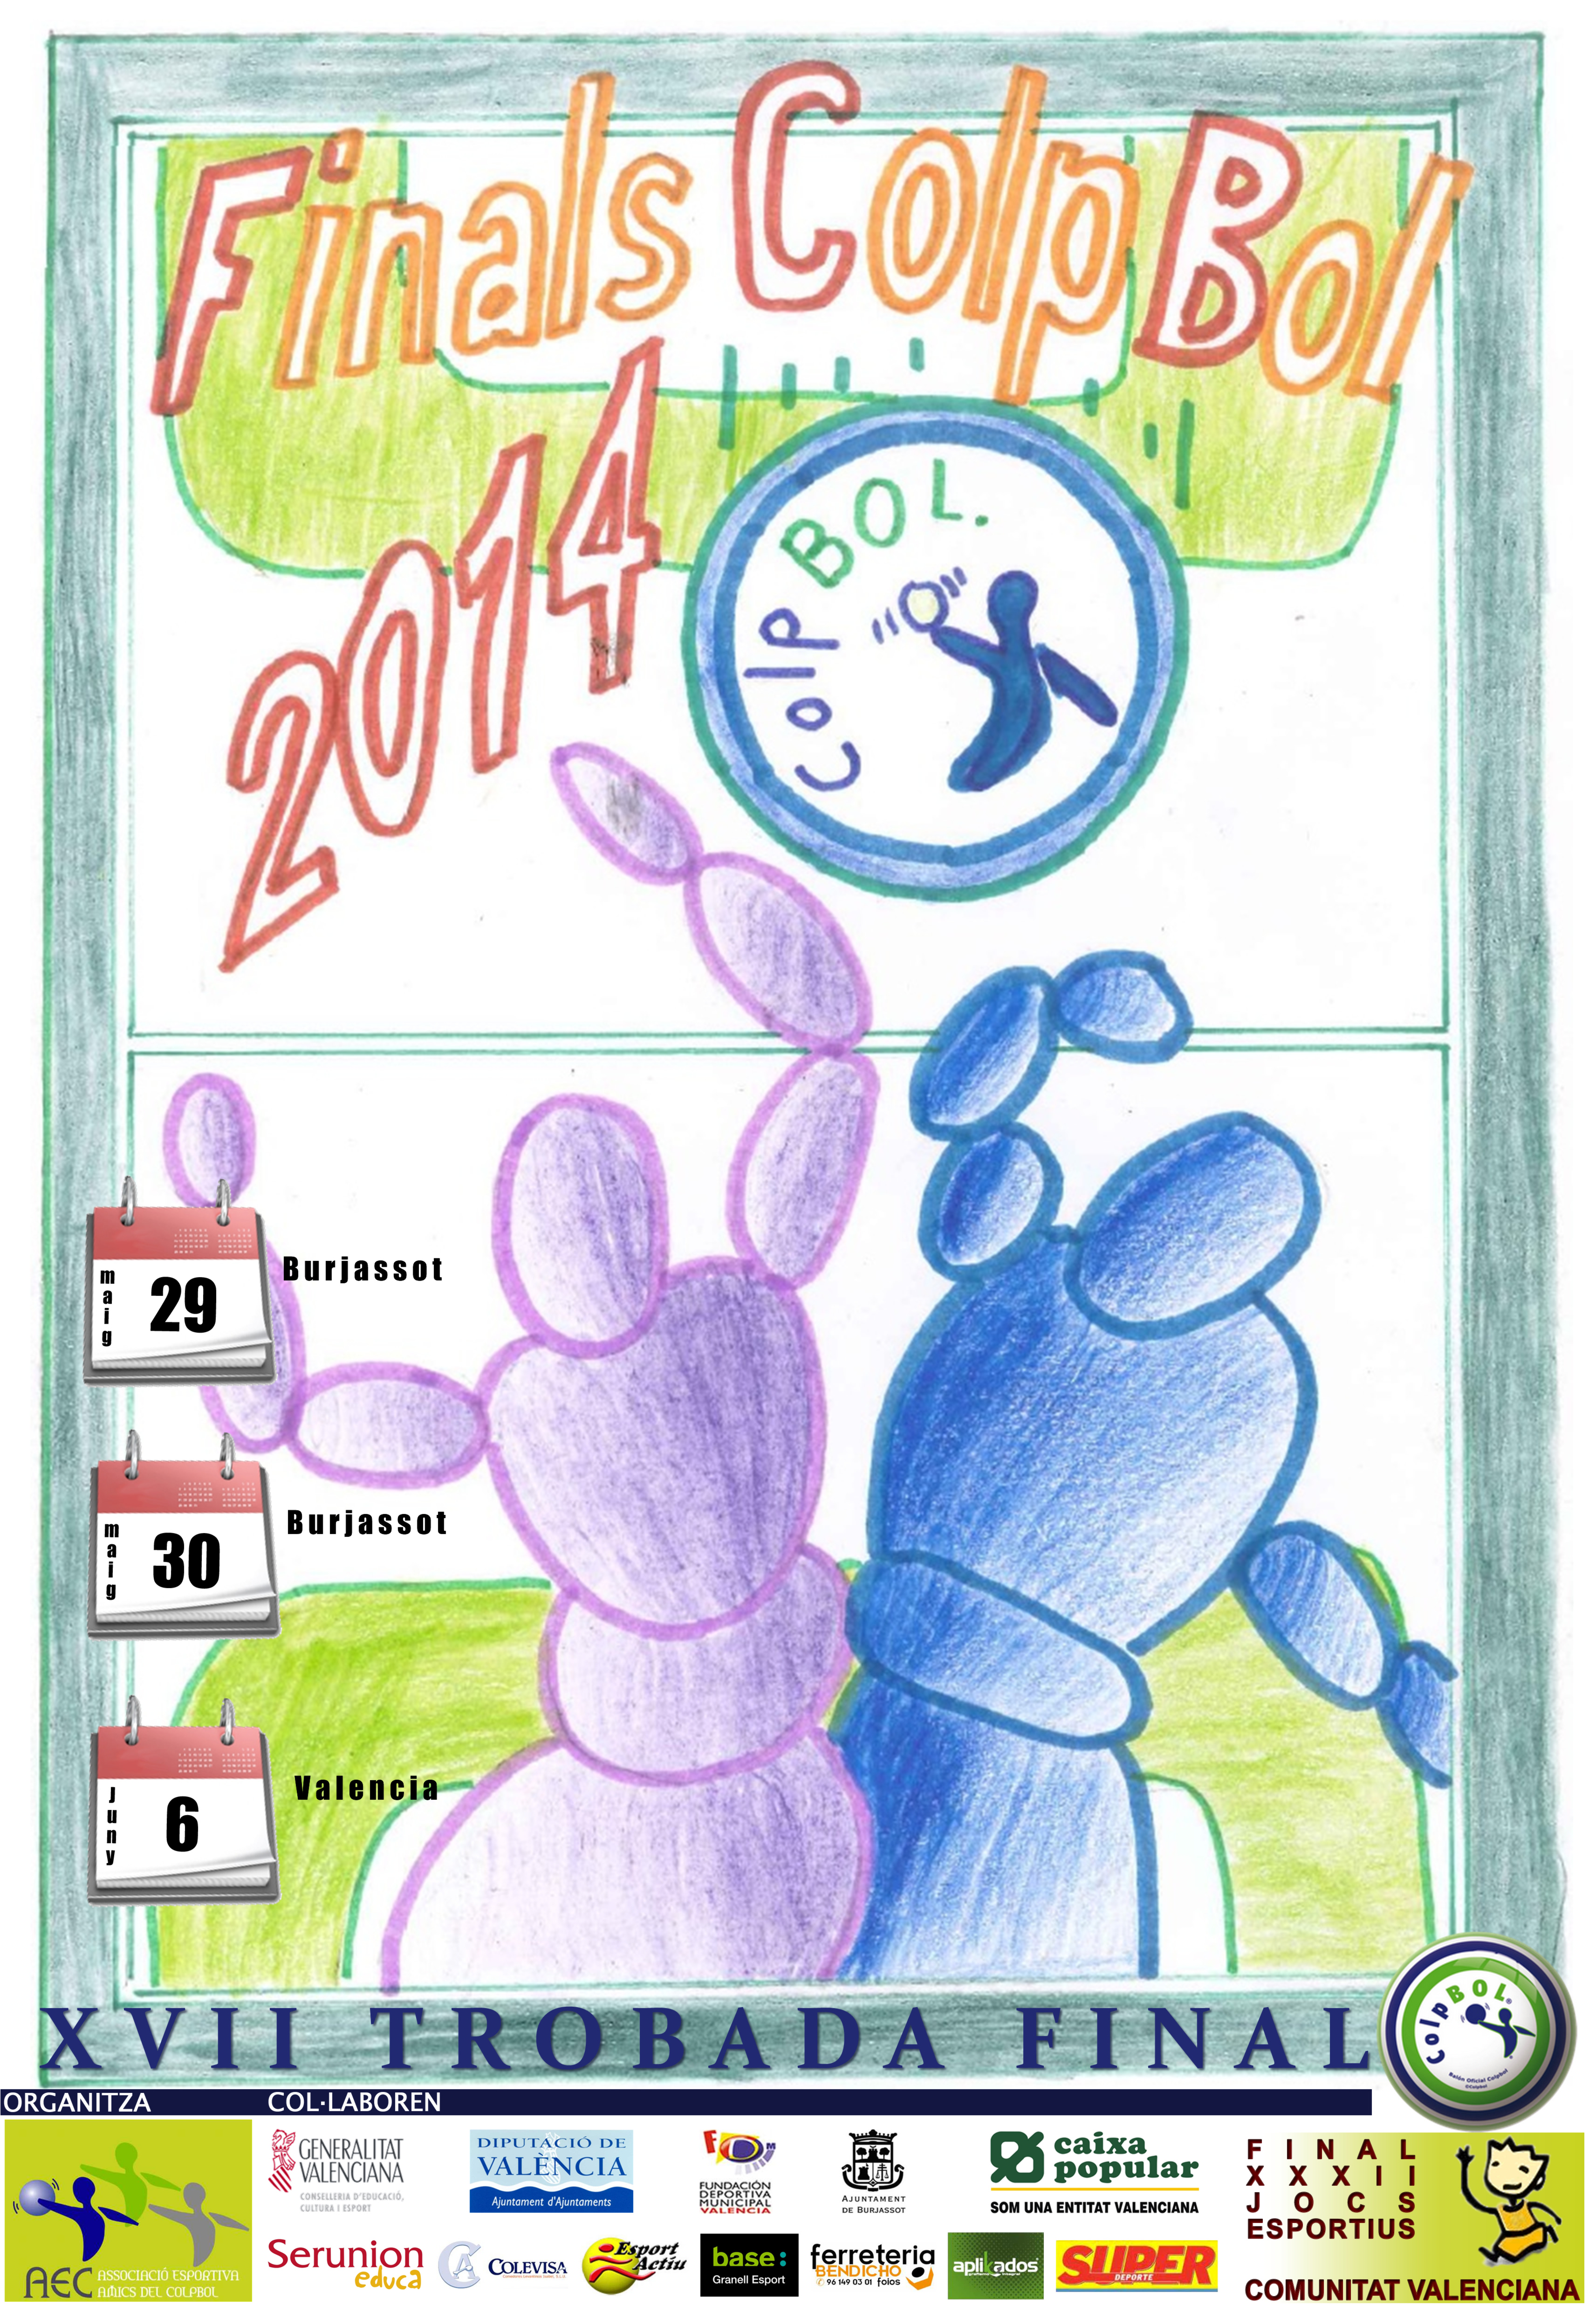 Cartell guanyador de les Trobades Finals LOC 2013/2014